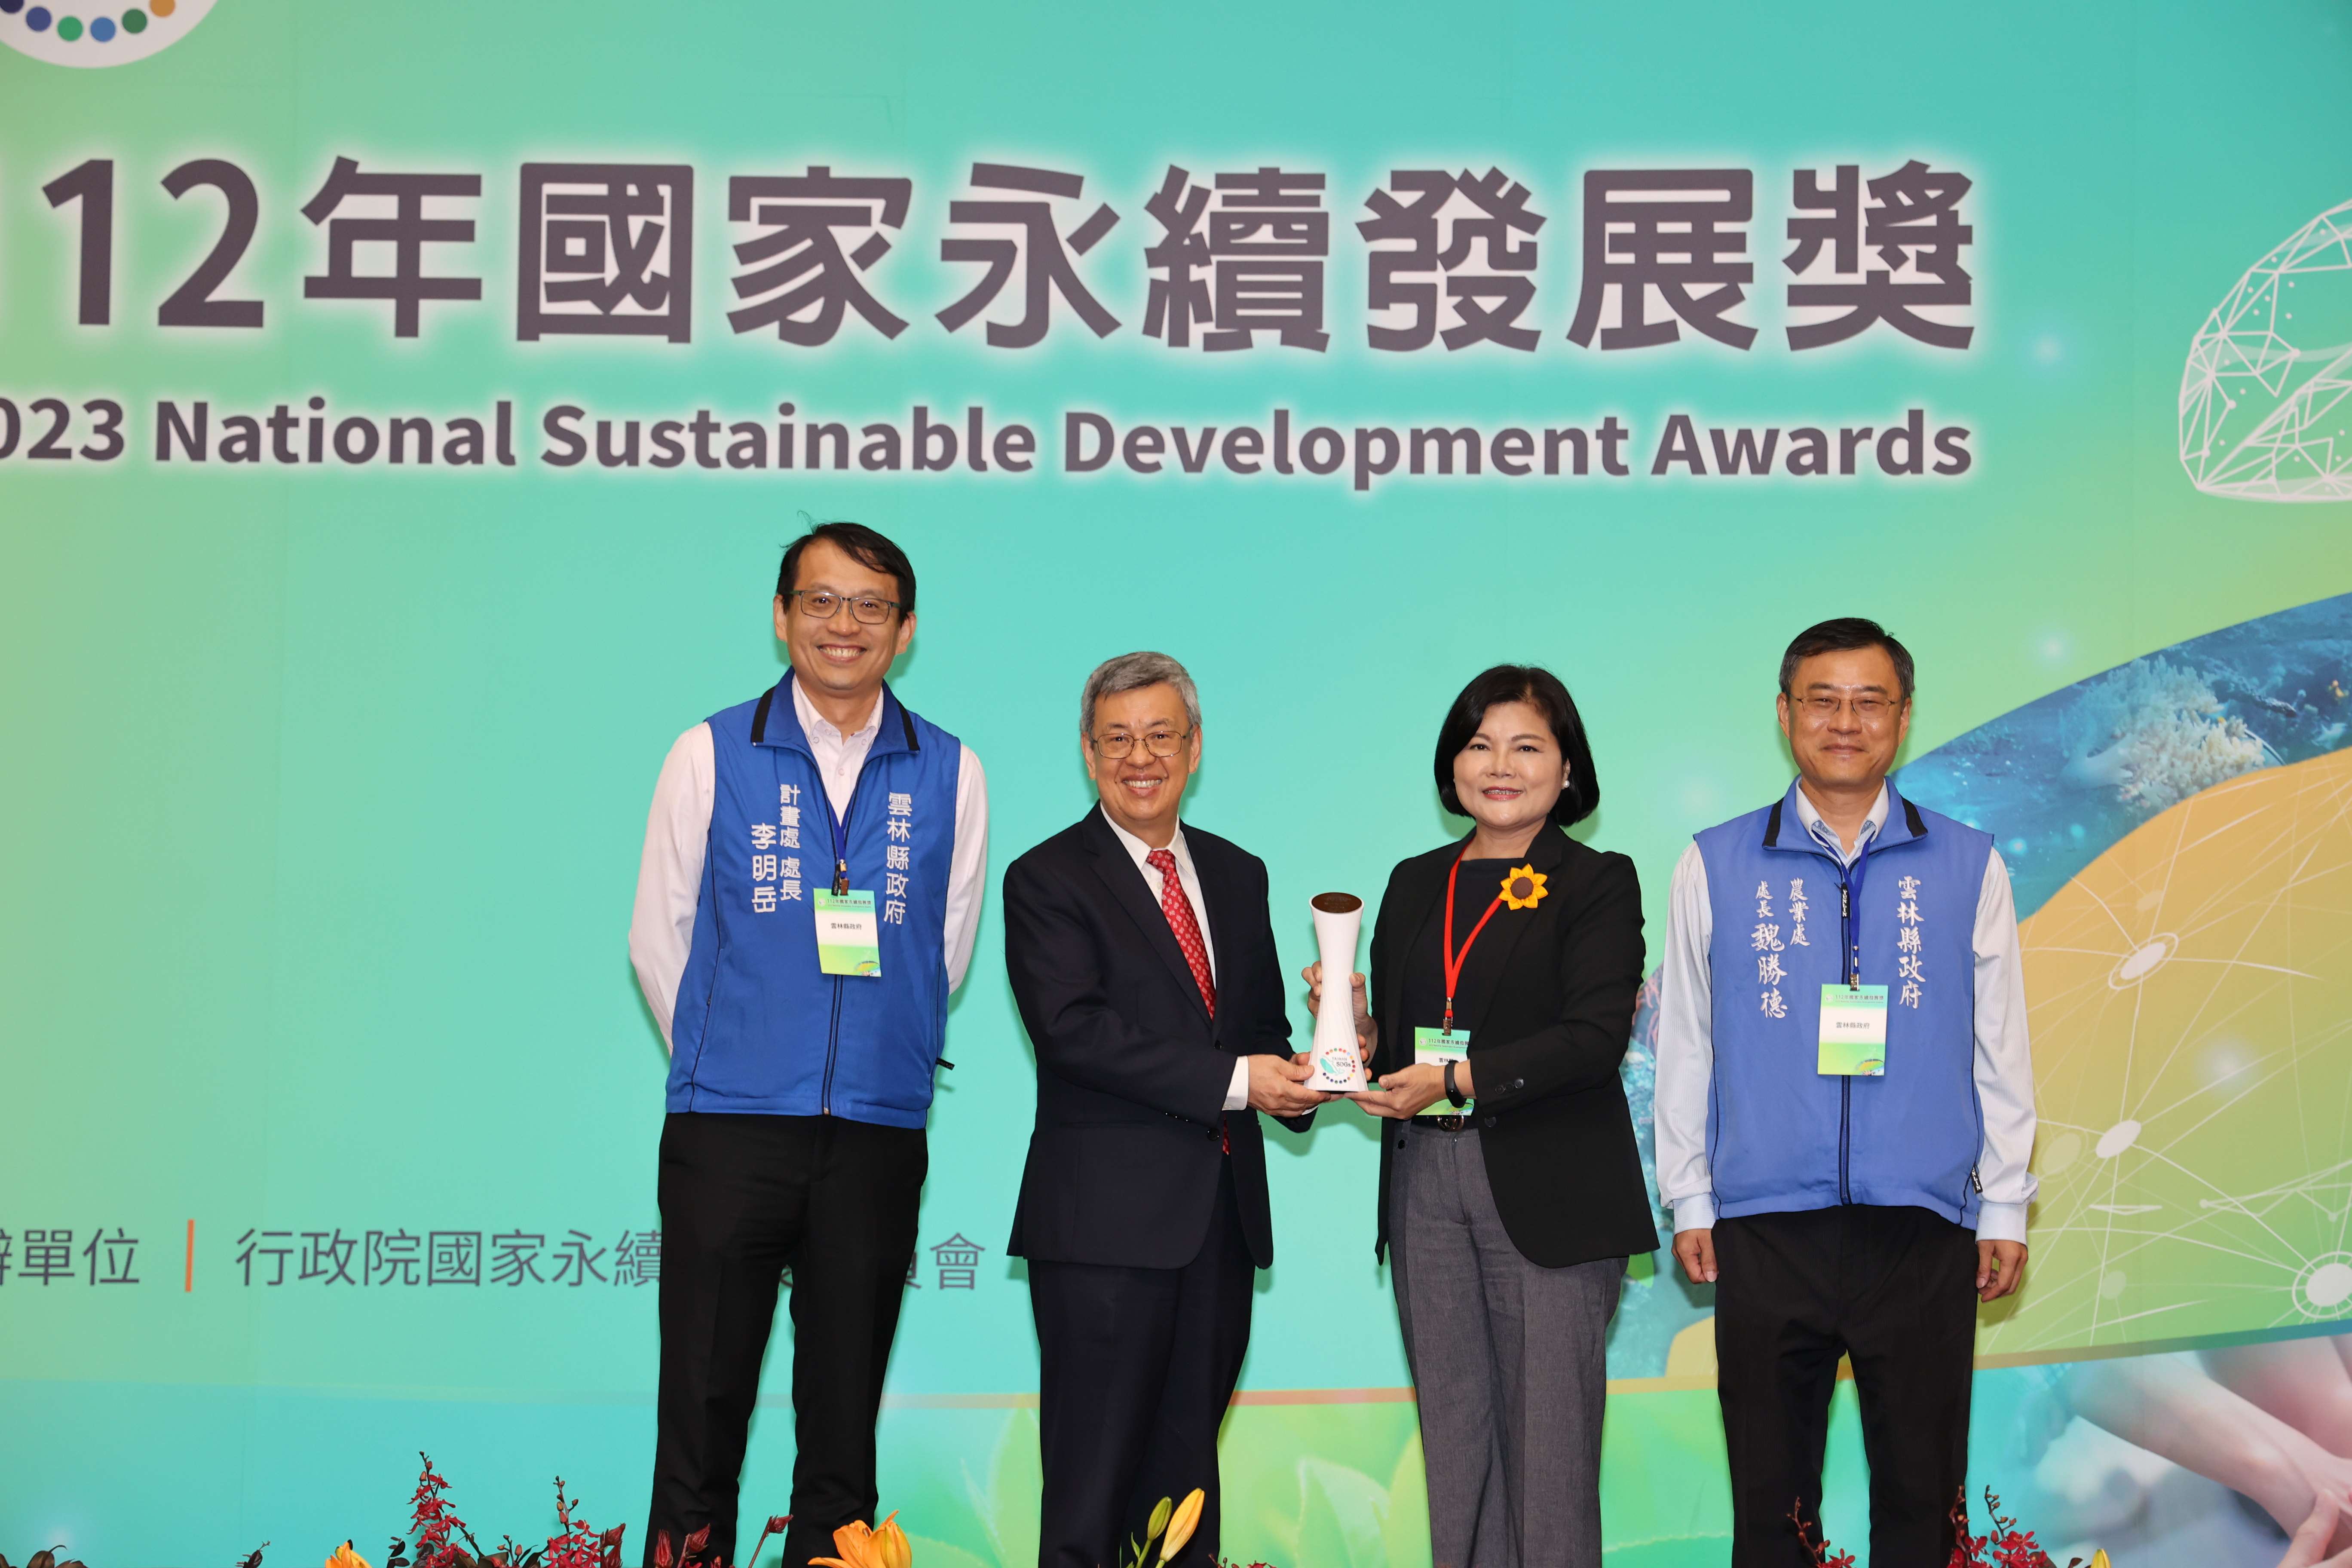 雲林縣政府此次是所有縣市政府當中唯一獲國家永續發展獎政府機關類獎項肯定的縣市